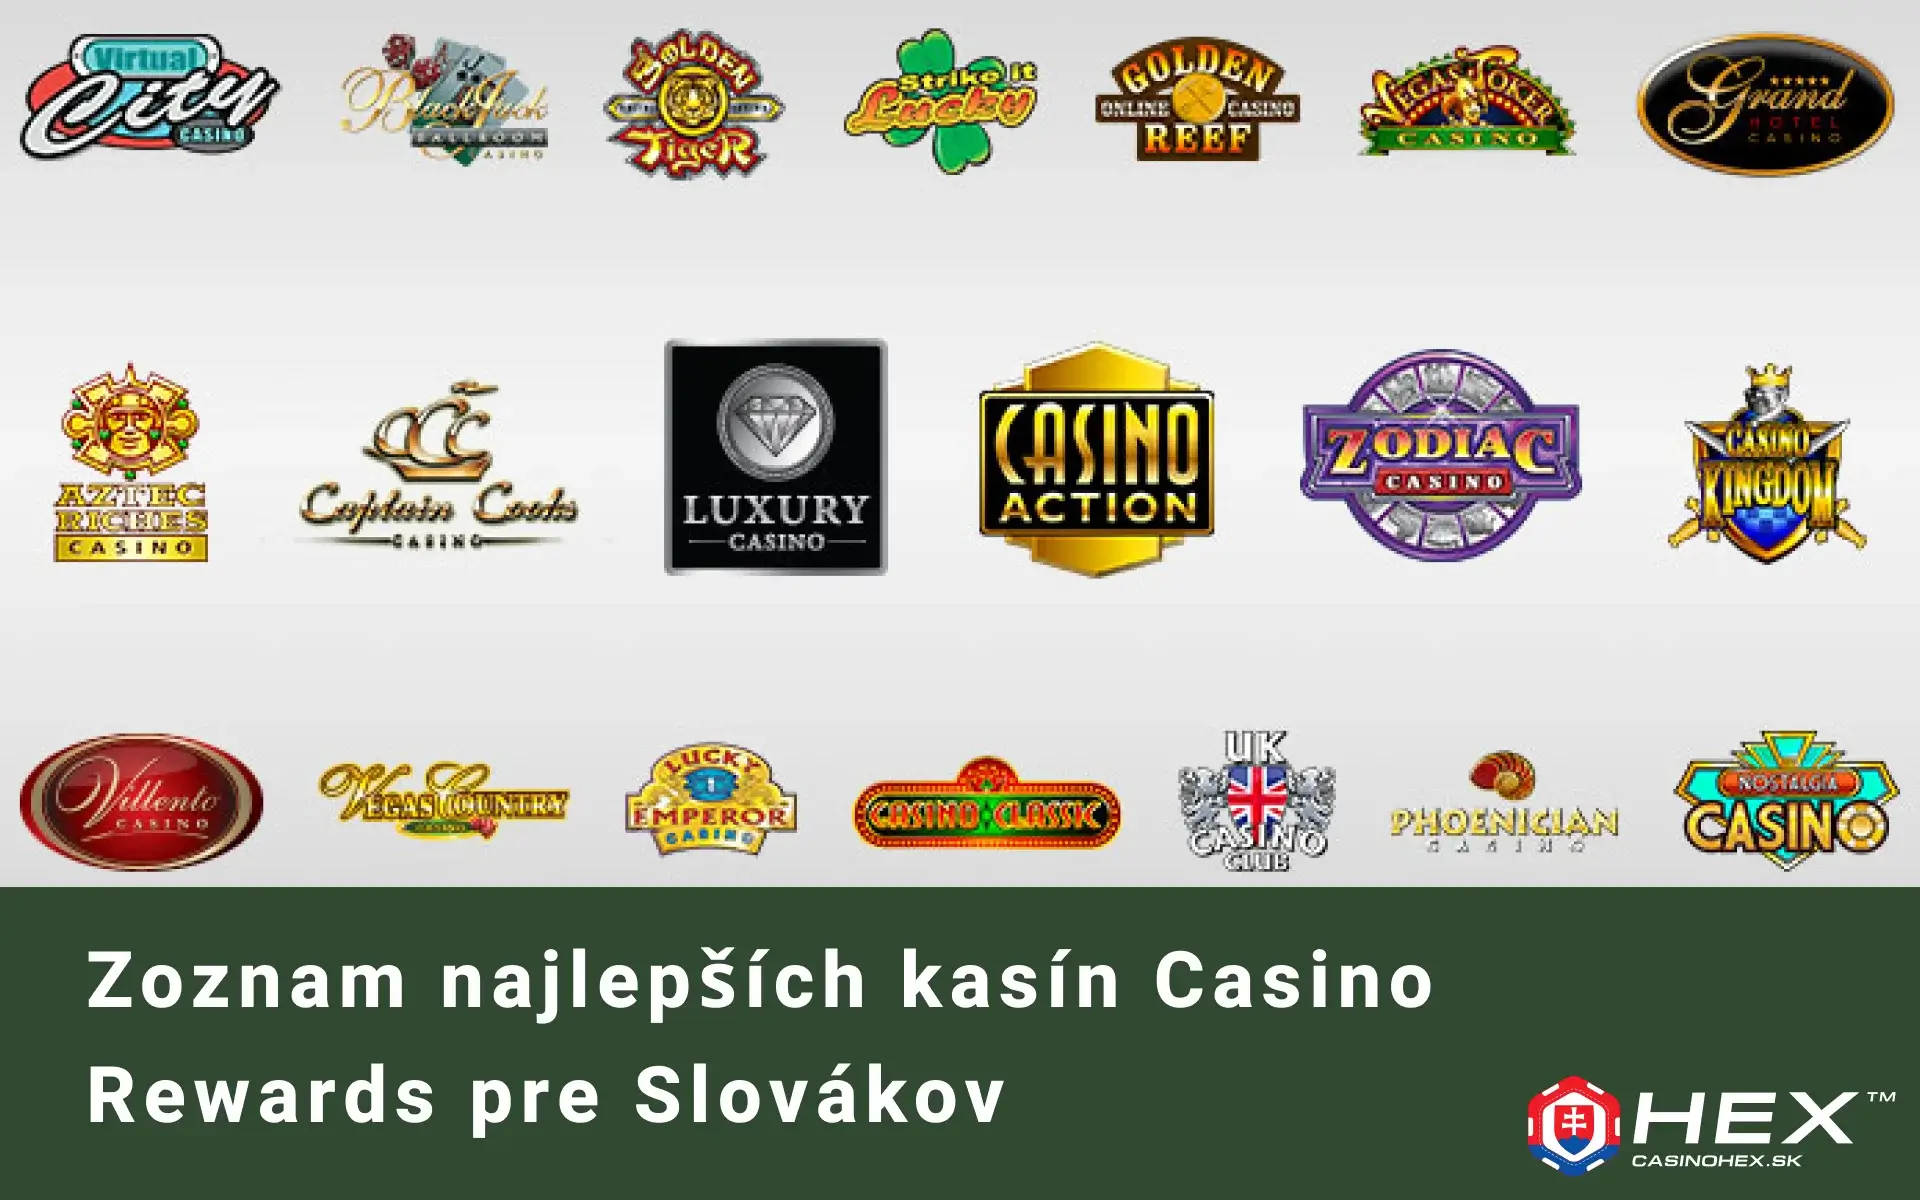 Zoznam kasin v skupine Casino Rewards